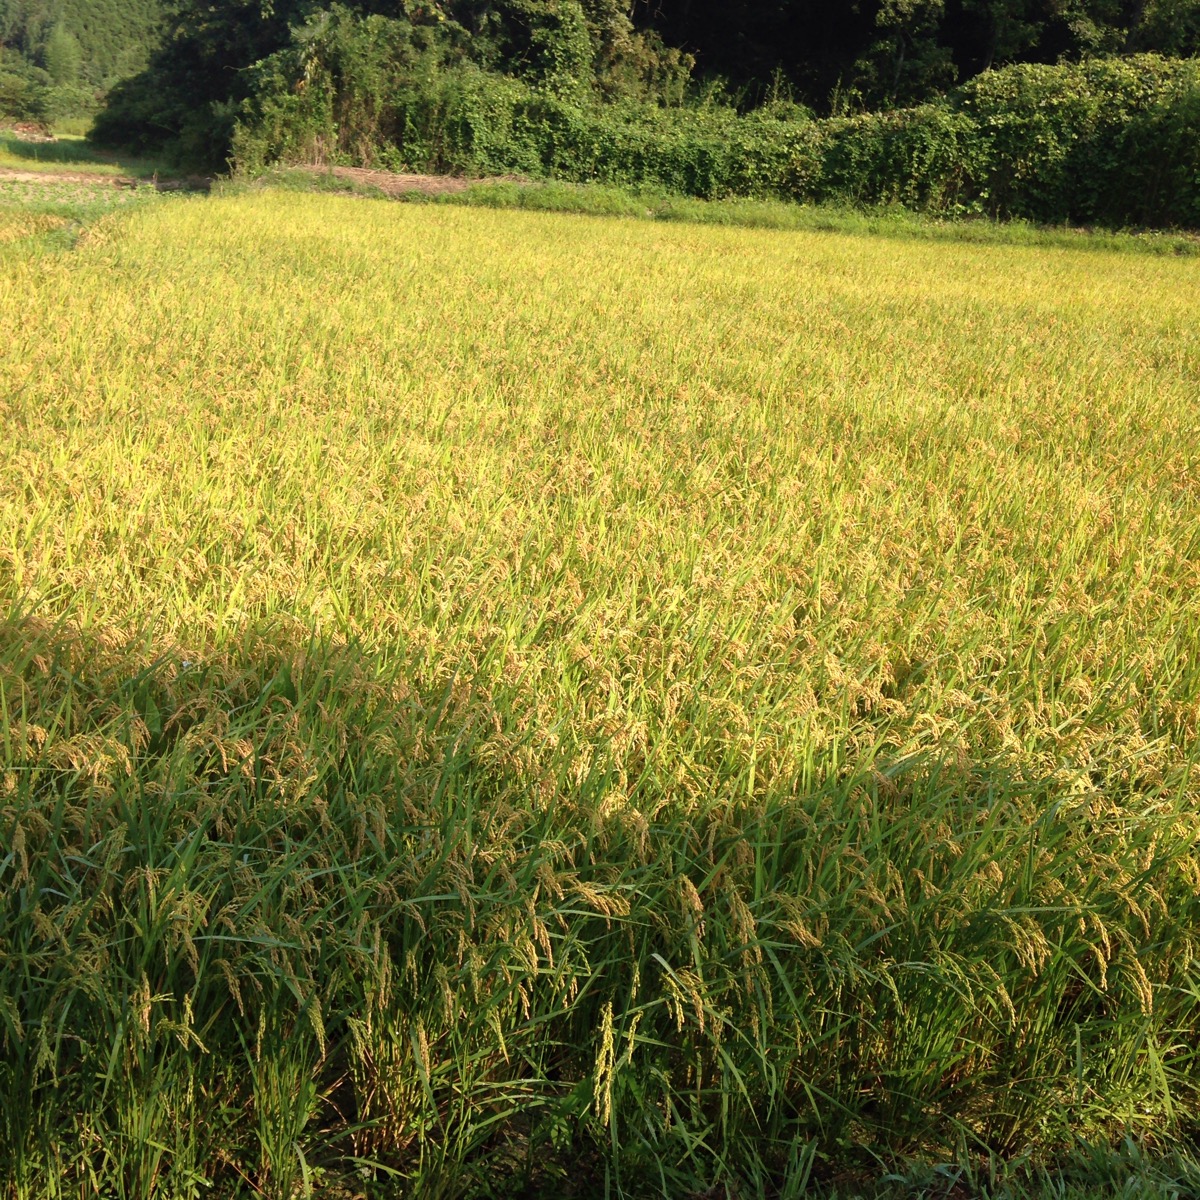 千葉は関東一の早場米の産地。たわわに実った稲穂が黄金色に、もうすぐ稲刈りが始まります。